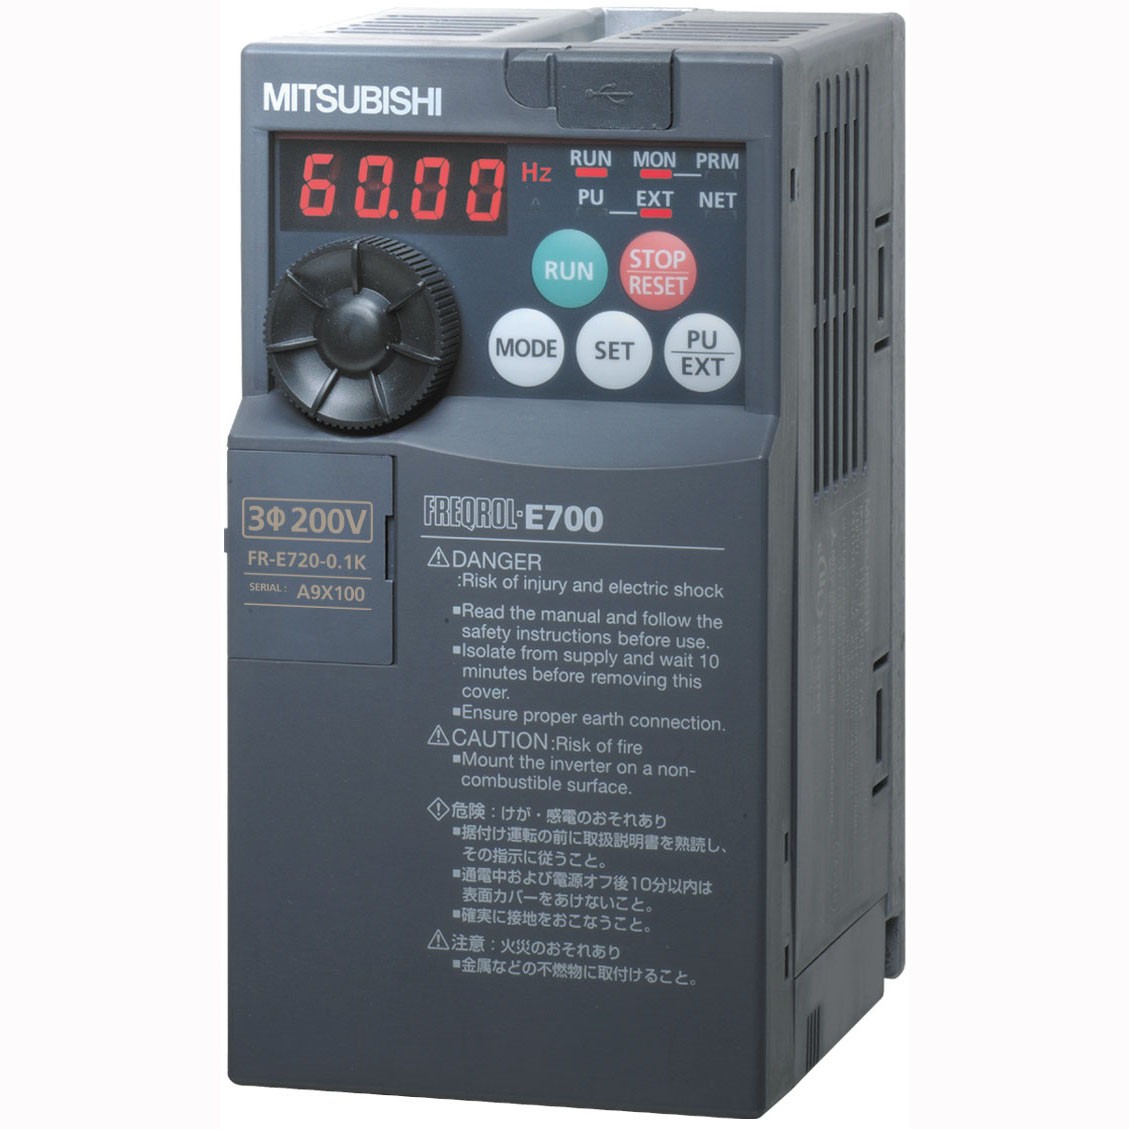  FR-E720S-1.5K-CHT 三菱变频器1.50KW经济型单相200V电源E720S-1.5Kw价格好